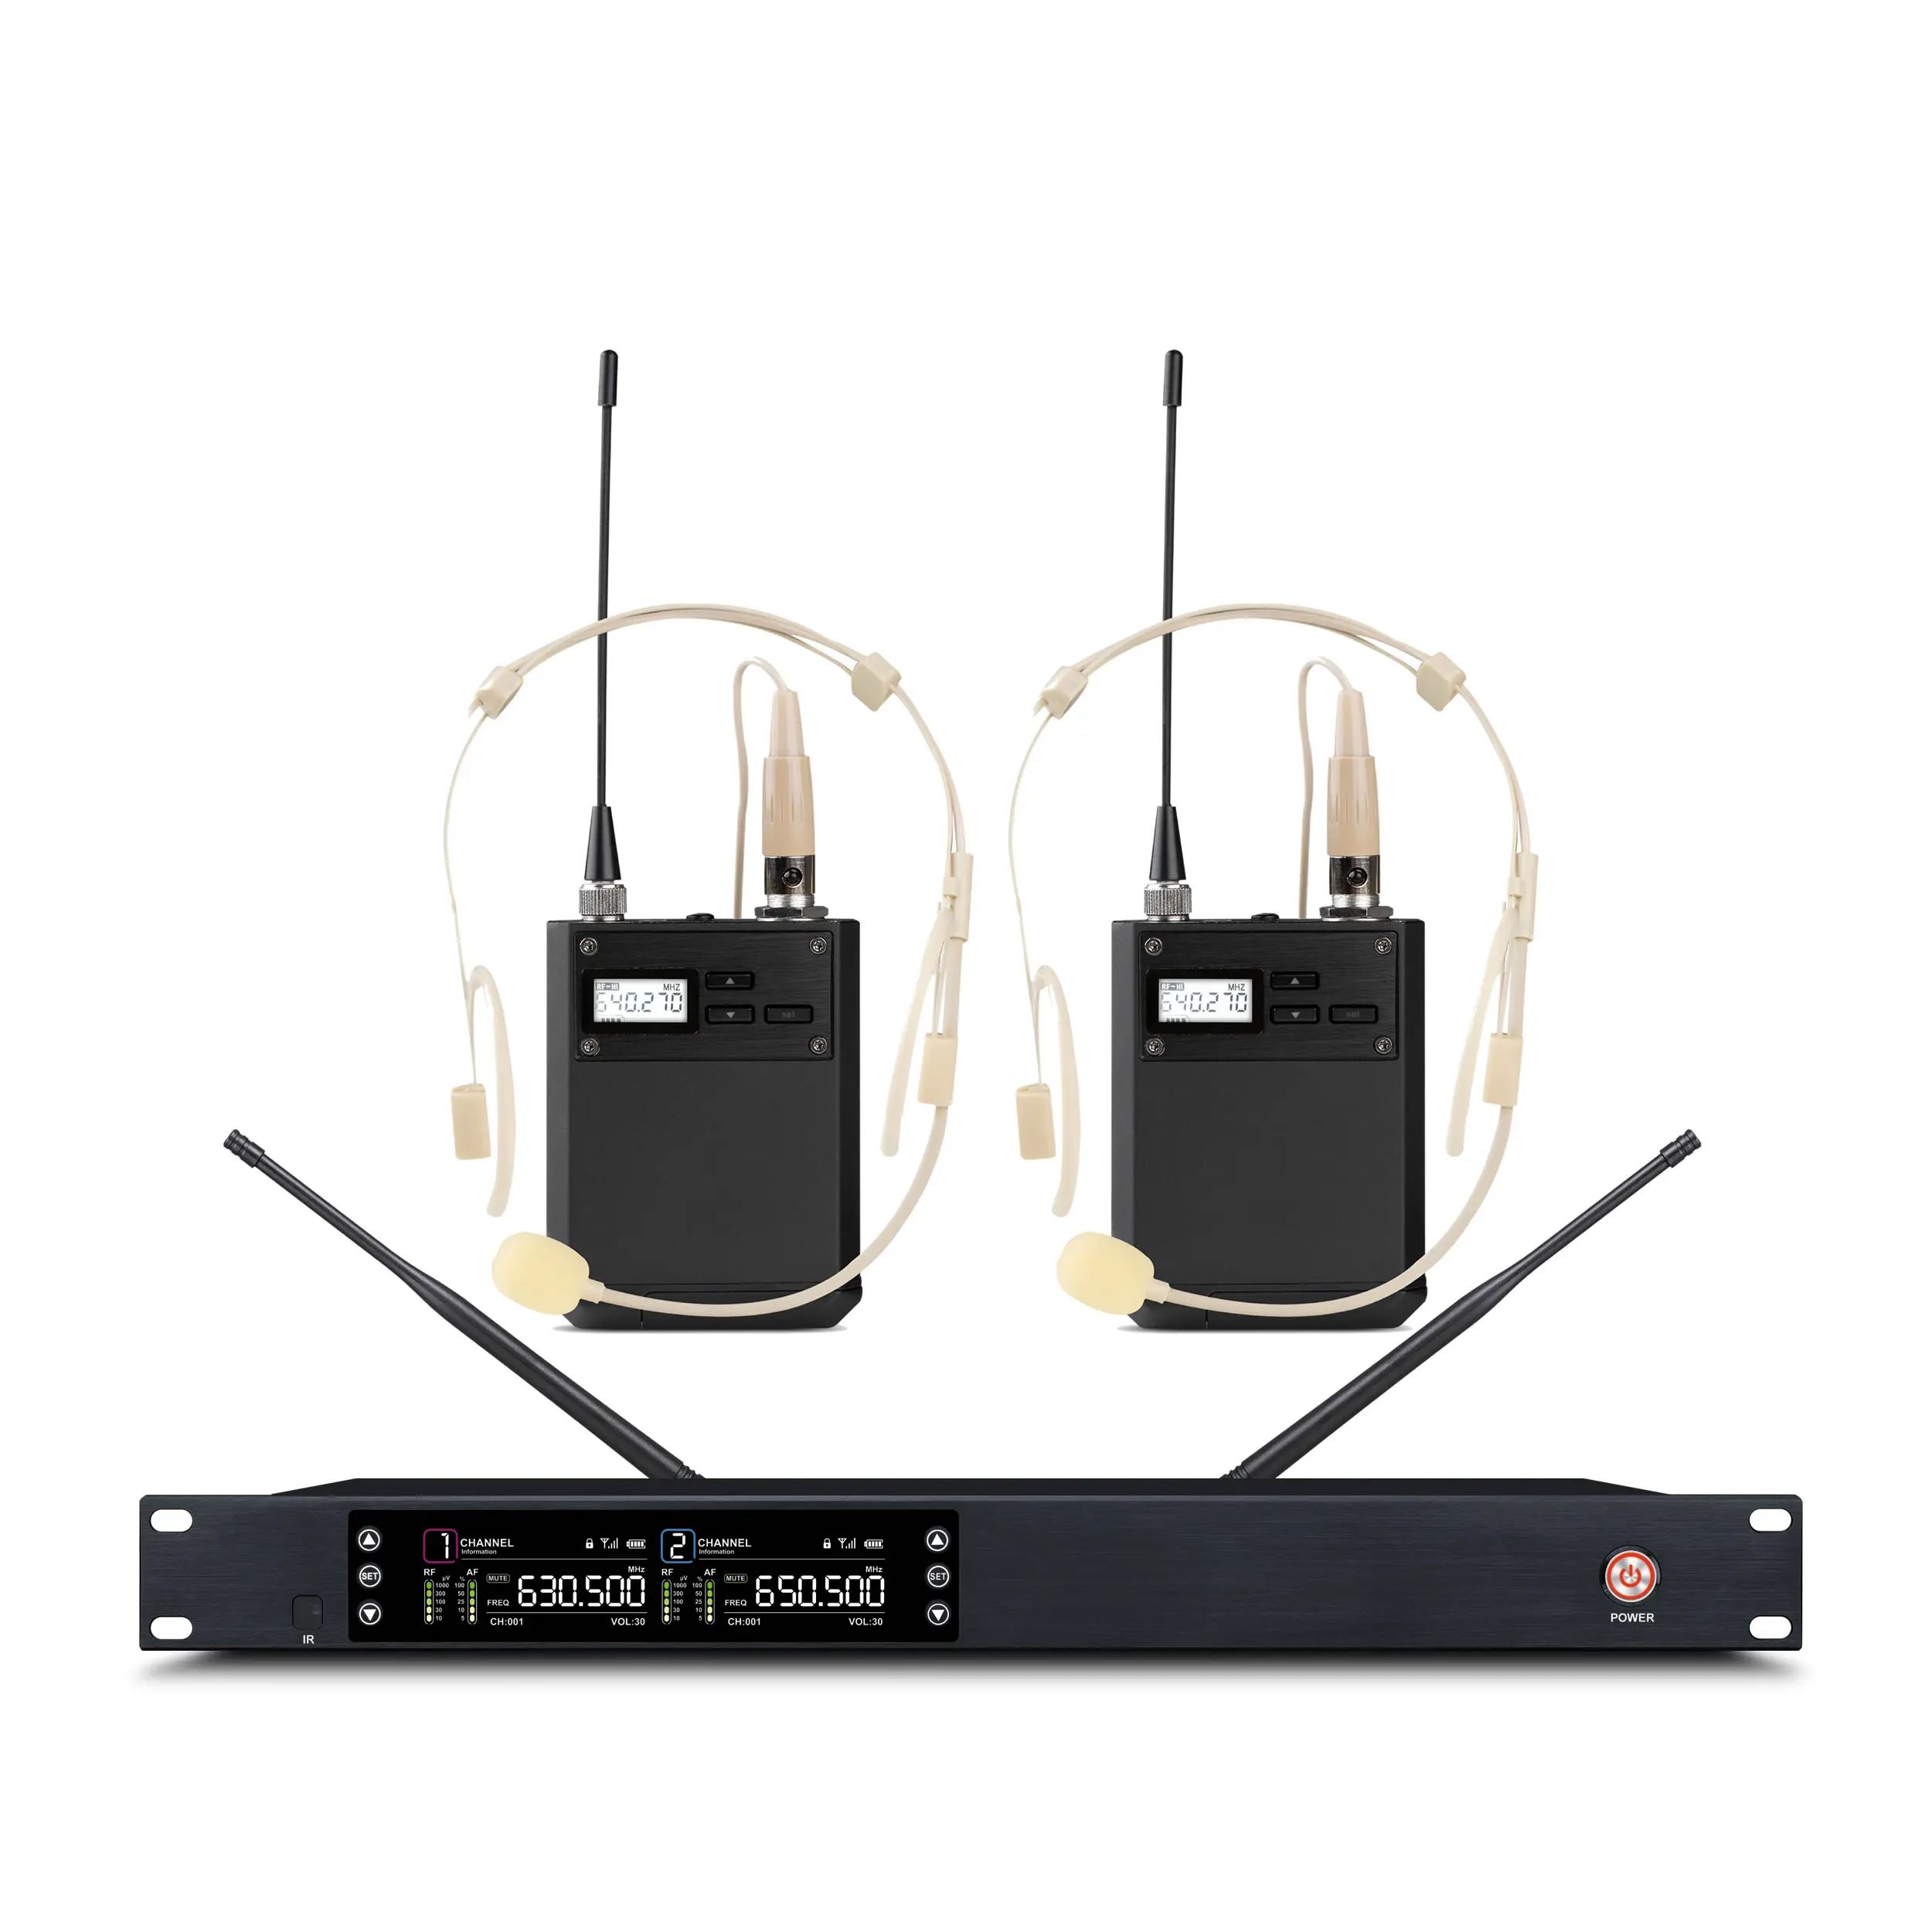 Trais ไมโครโฟนติดชุดหูฟังสำหรับสอนคาราโอเกะไร้สาย UHF